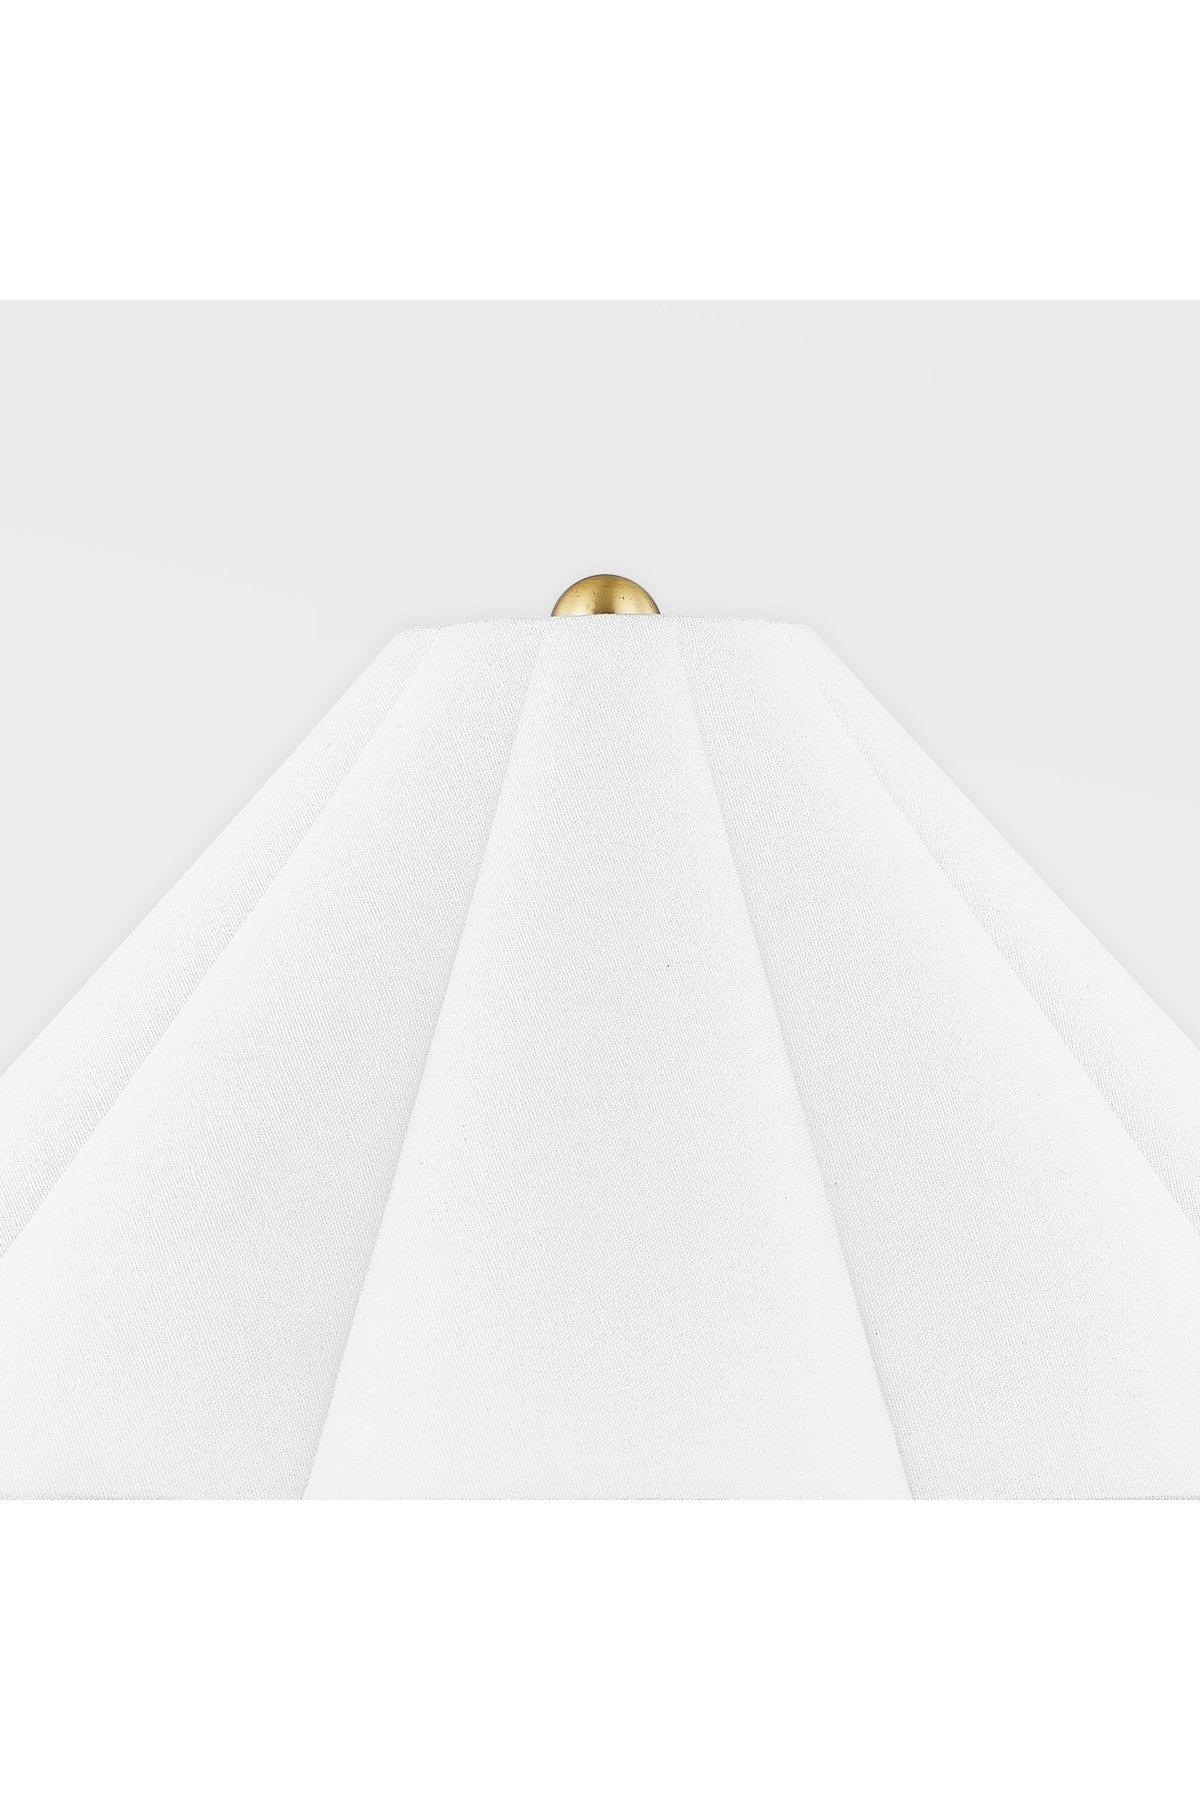 Anala Table Lamp